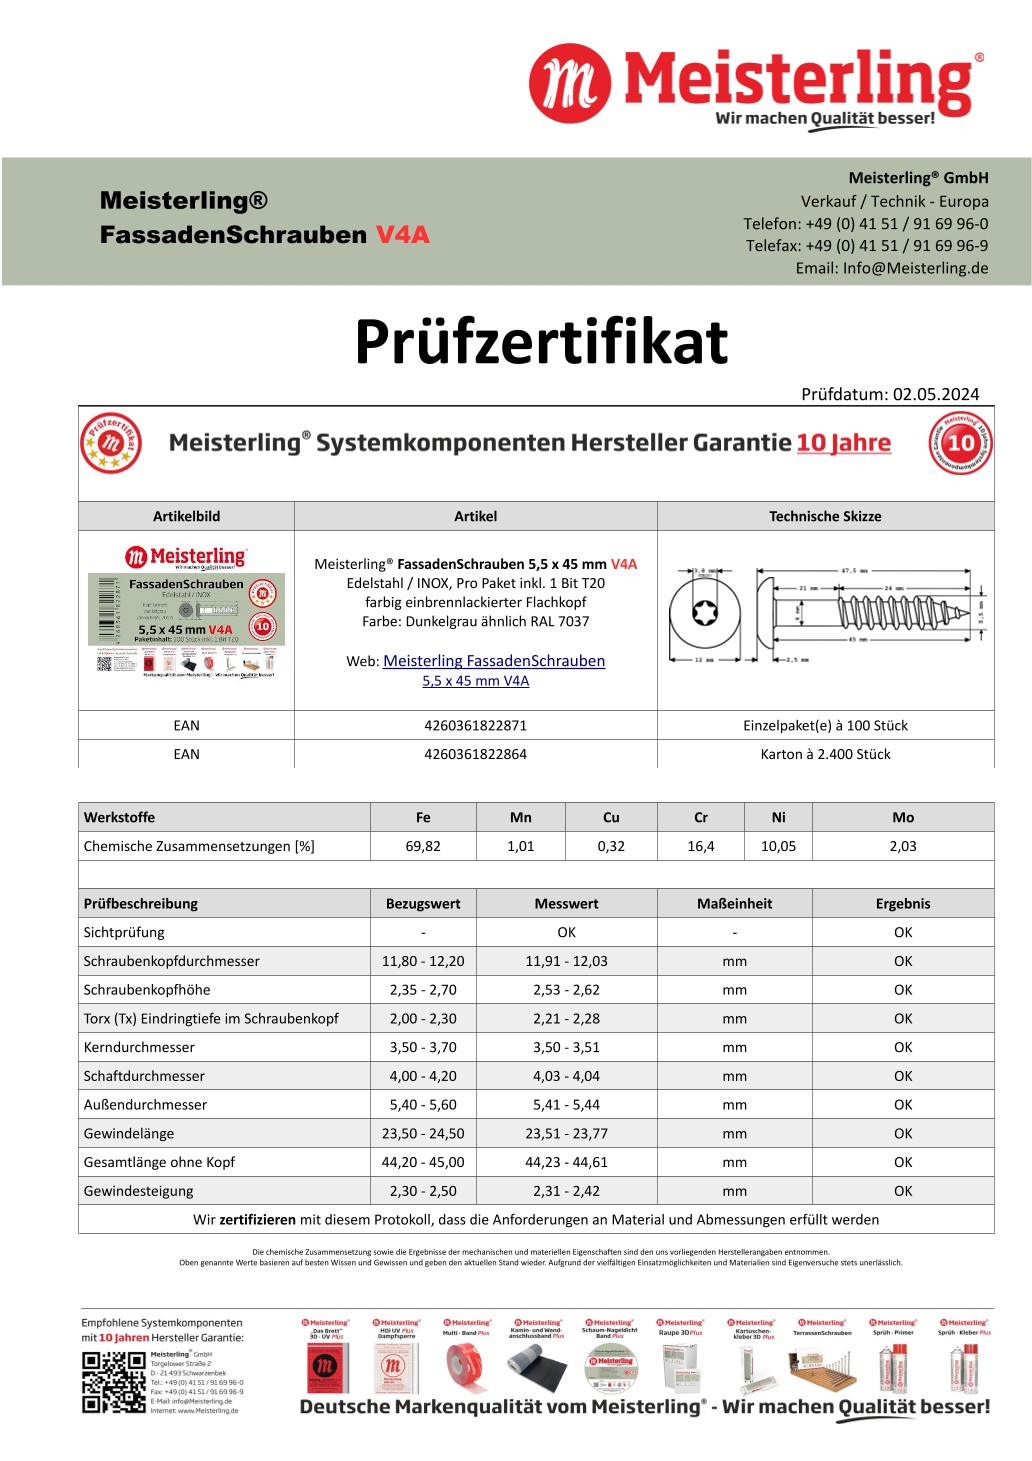 Prüfzertifikat Meisterling® FassadenSchrauben 5,5 x 45 mm V4a dunkelgrau